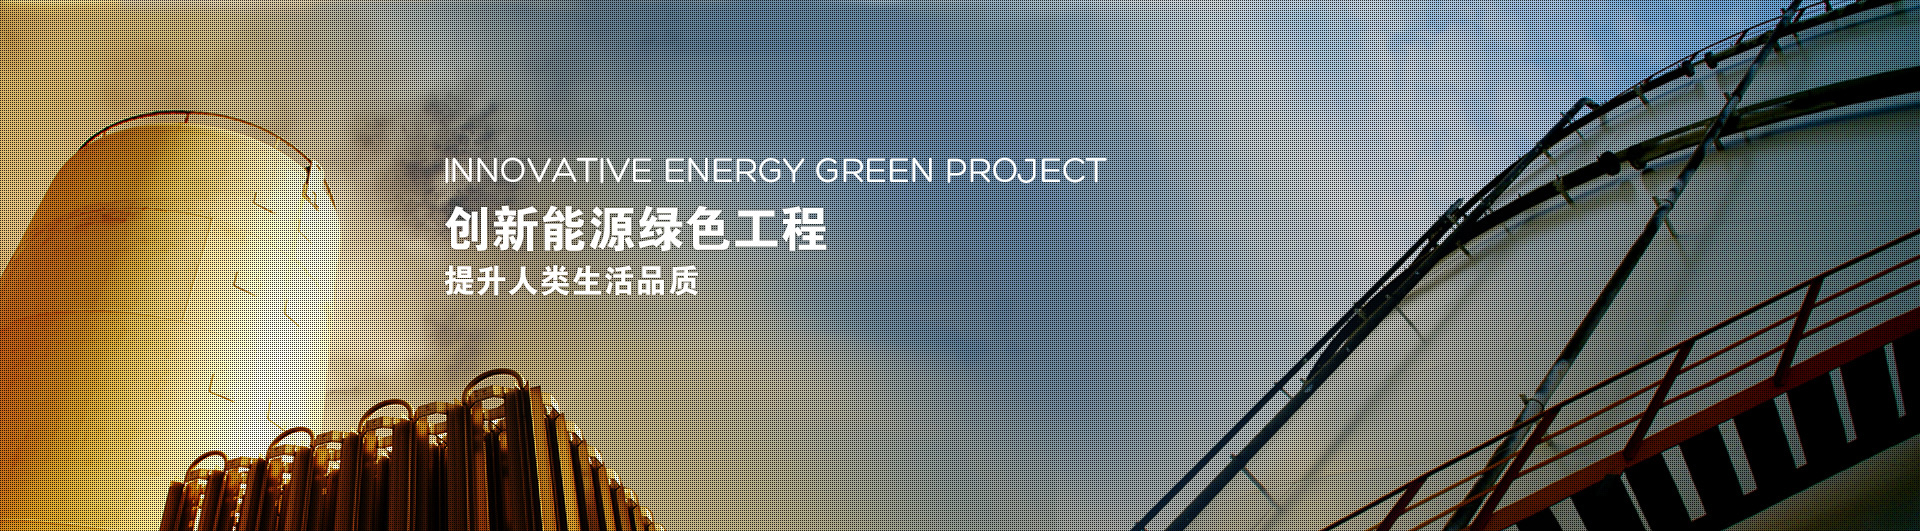 创新能源绿色工程